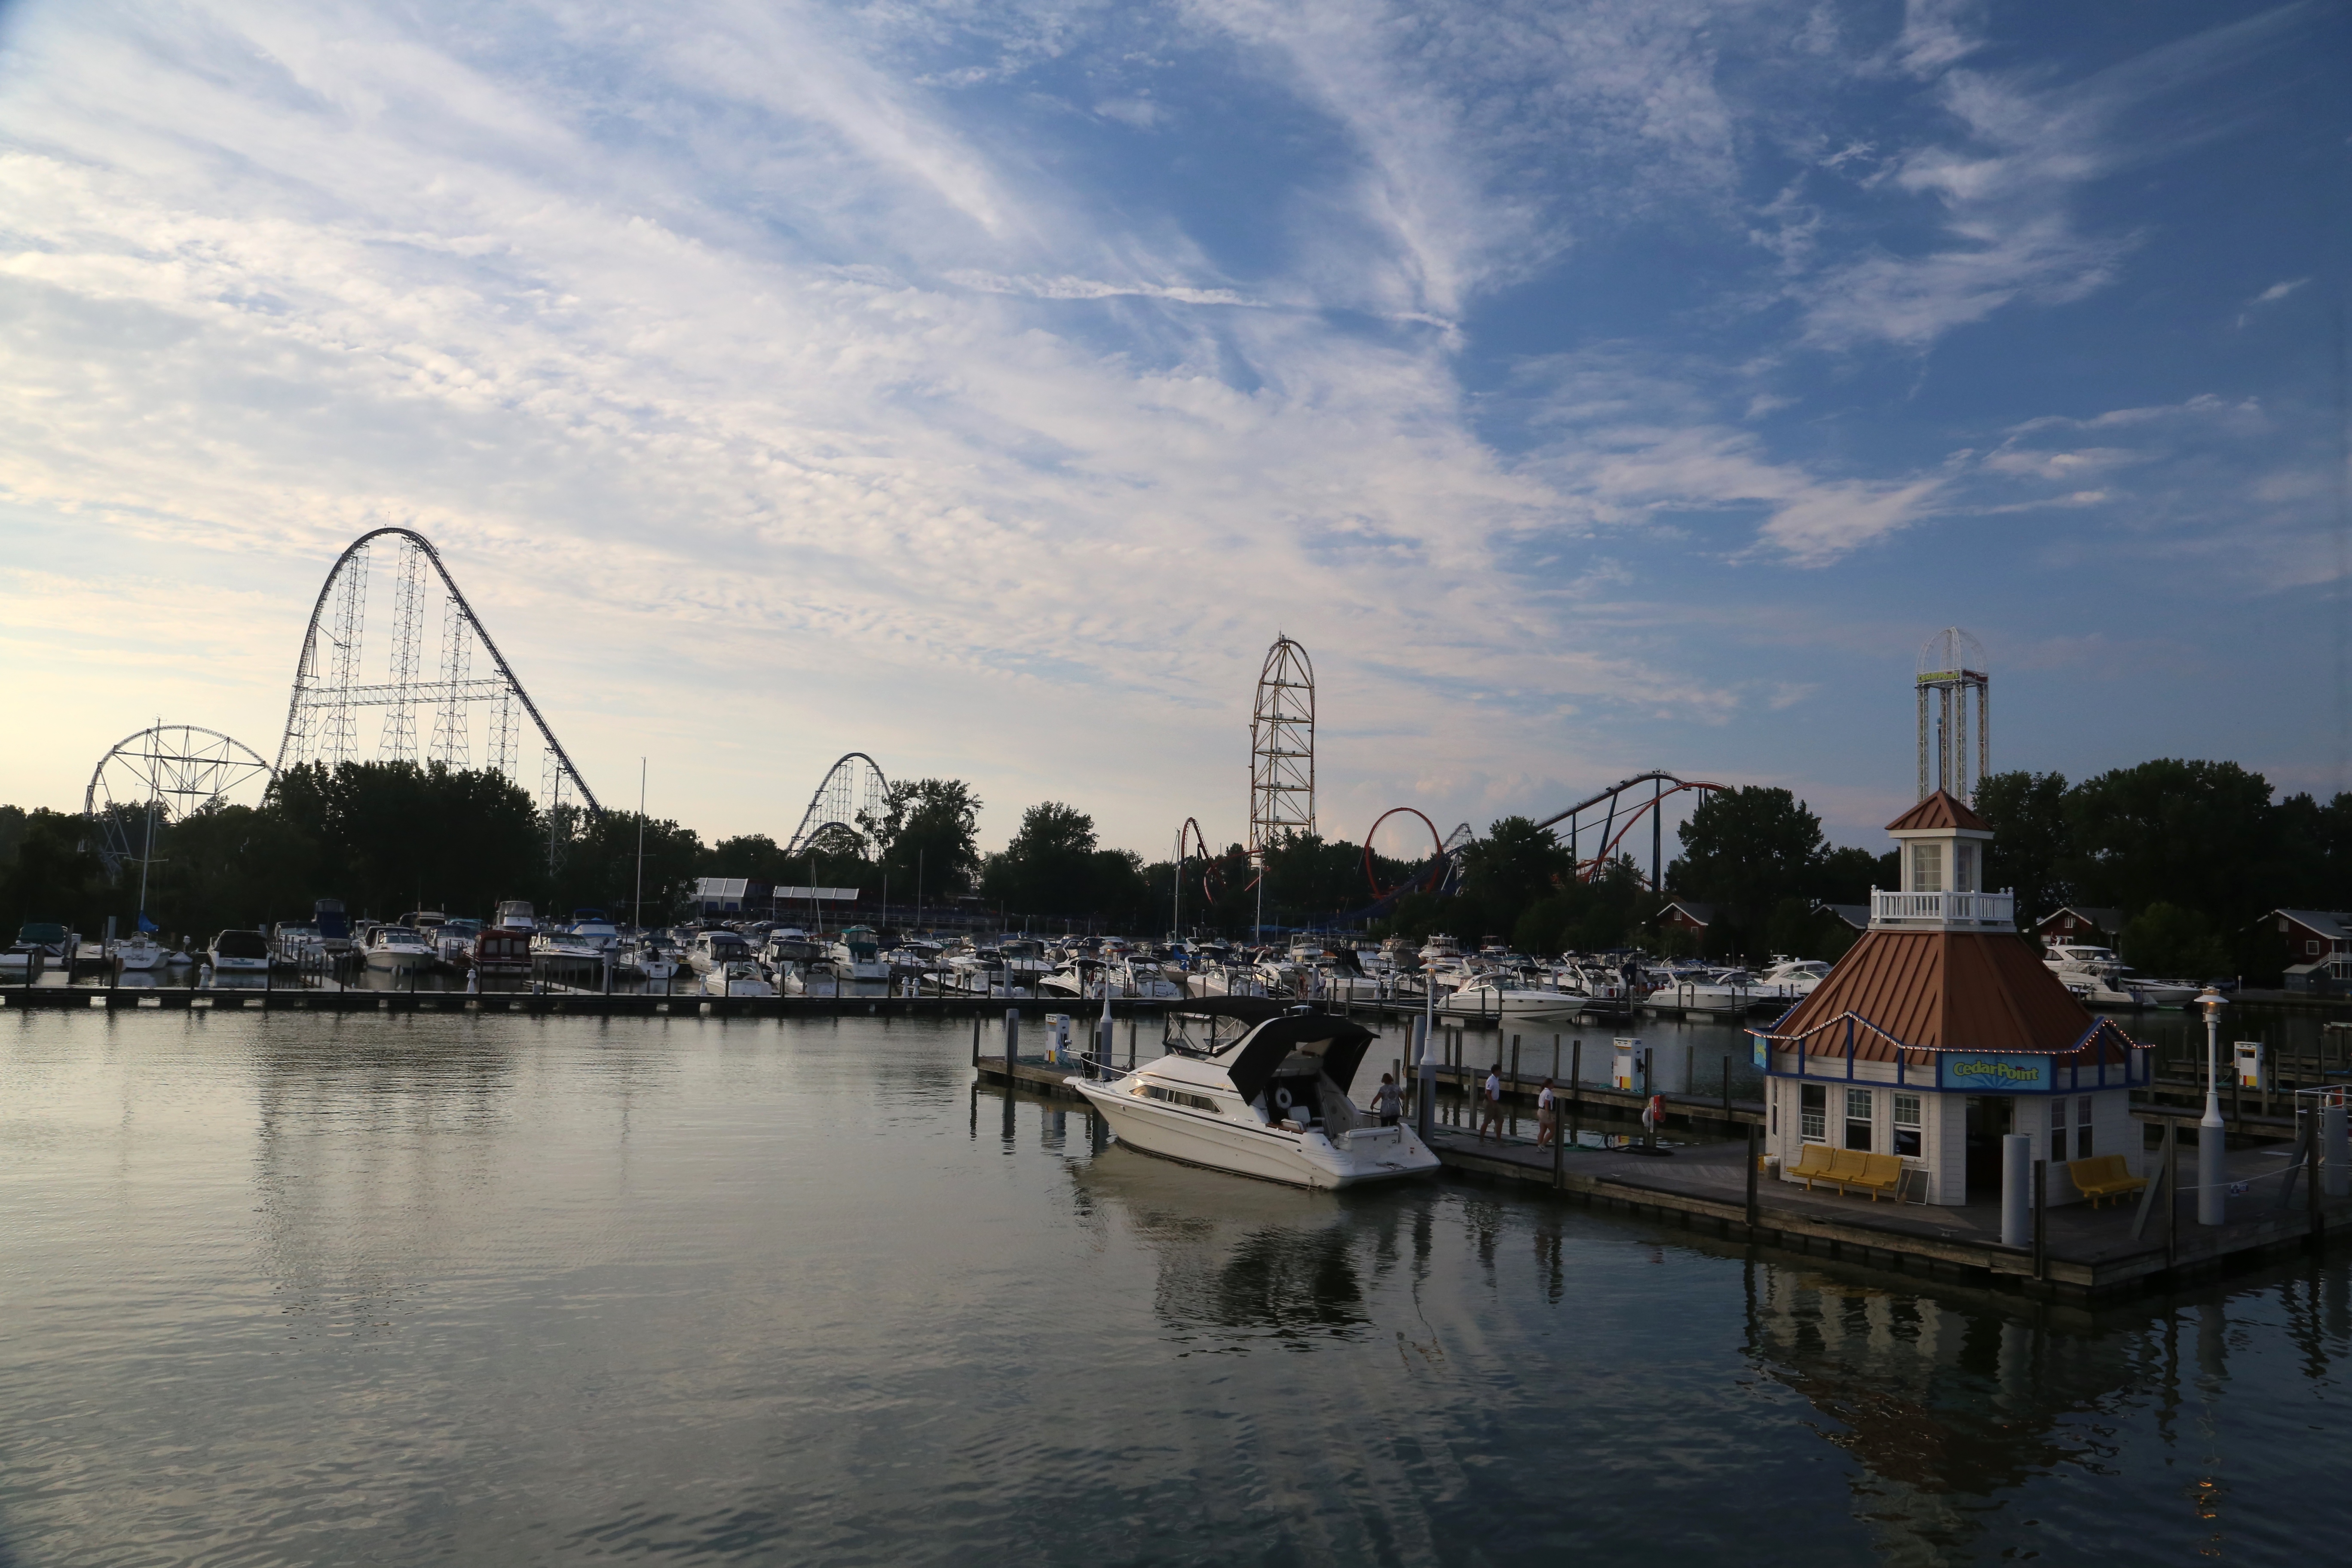 Theme Park Attractions and Harbor, Cedar Point Amusement Park, Sandusky, Ohio, USA